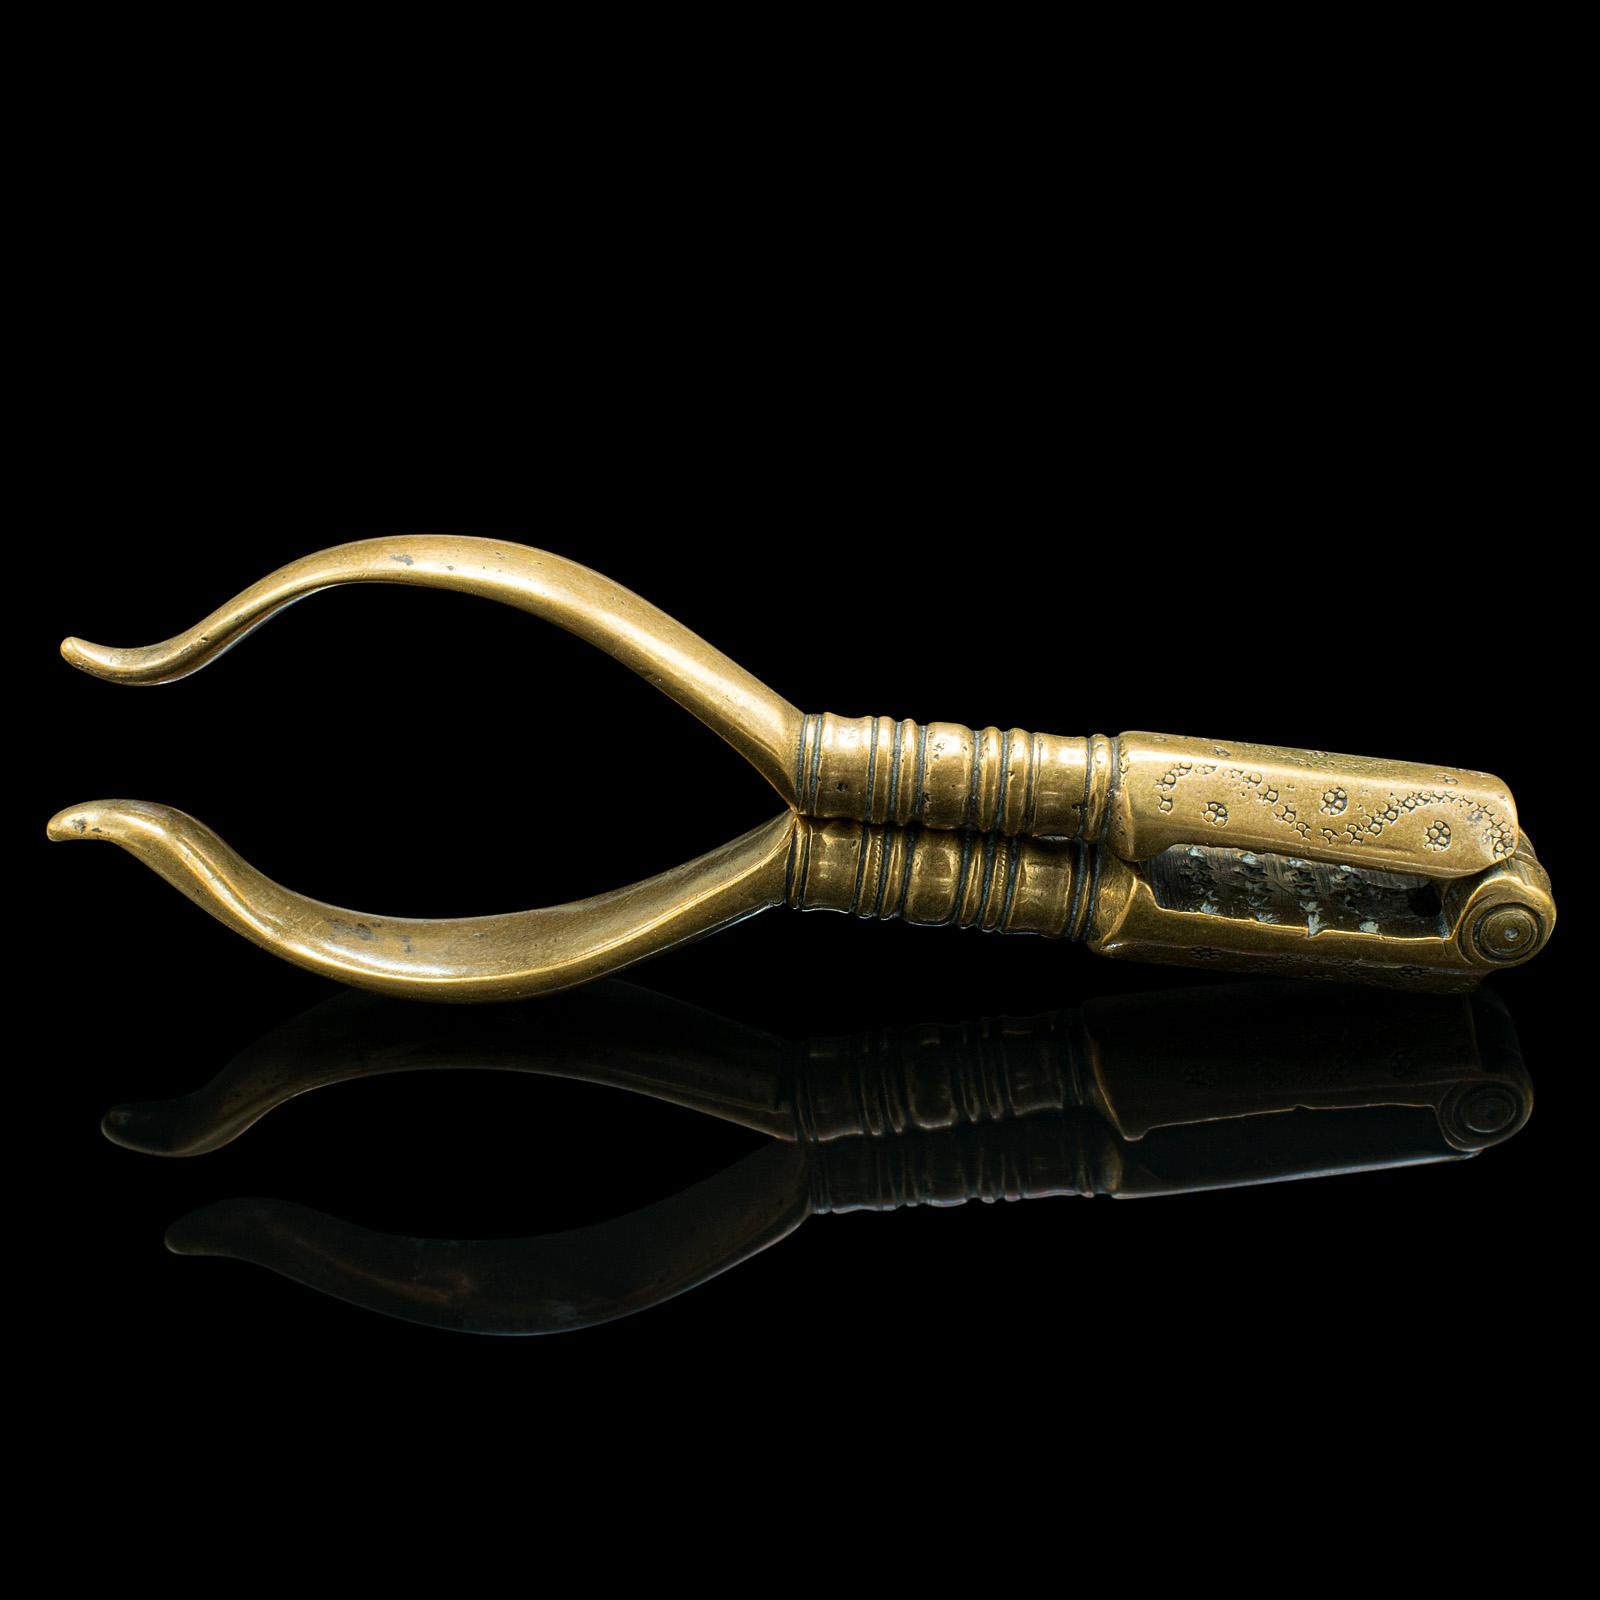 Dies ist ein kleines Paar antiker Pistazien-Nussknacker. Ein englisches Handwerkszeug aus Messing aus der georgianischen Zeit um 1800.

Charmant zierlich mit ansprechender georgianischer Handwerkskunst
Mit wünschenswerter Alterspatina und in